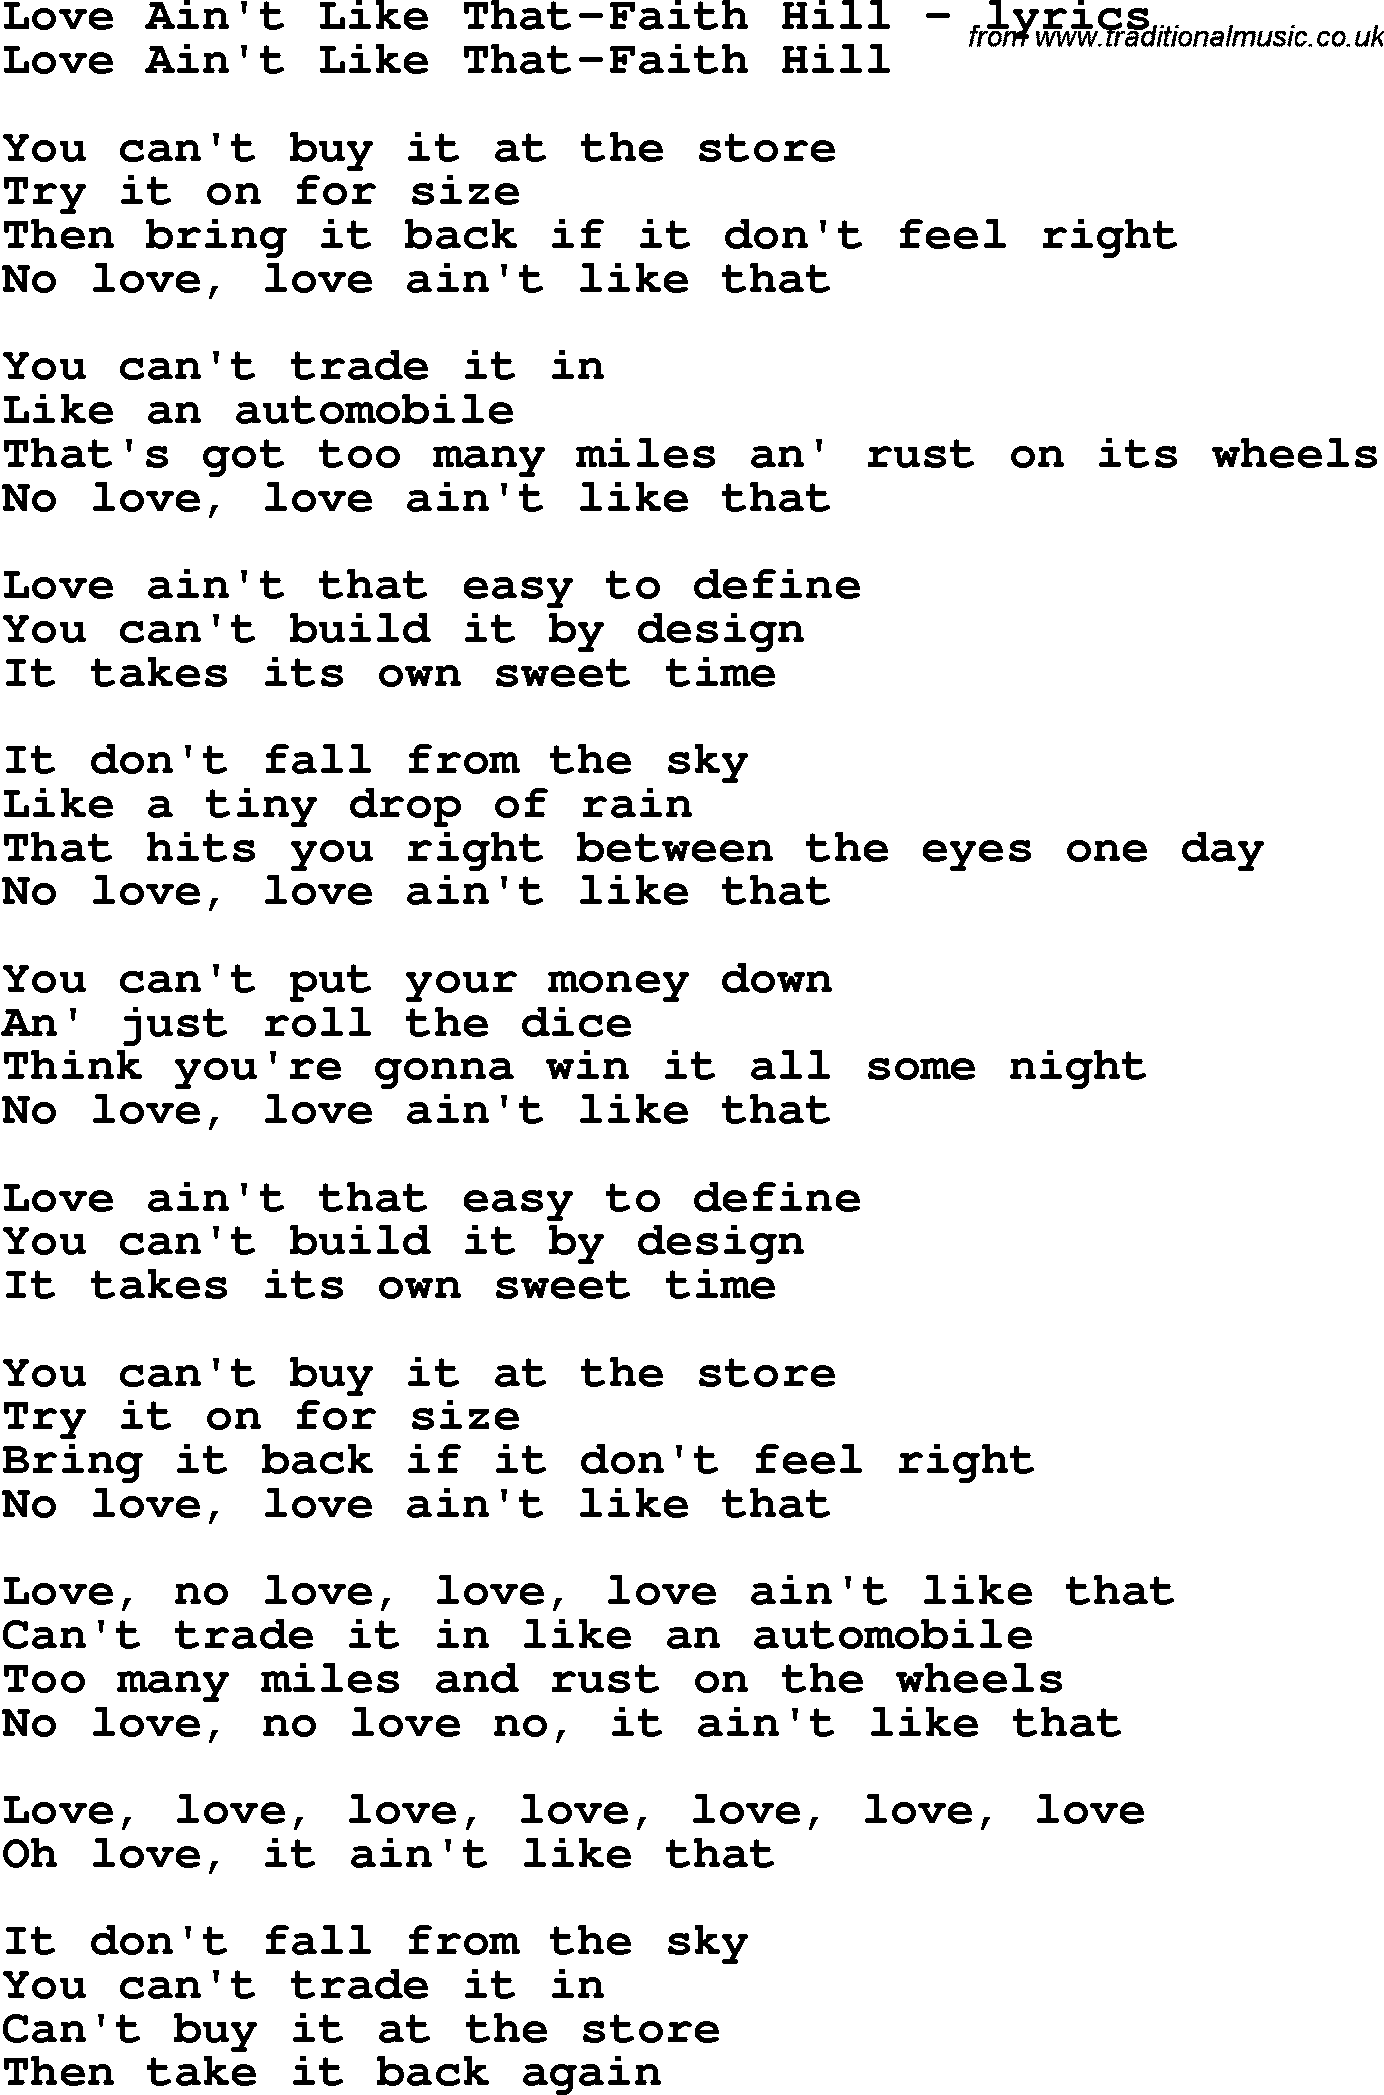 Love Song Lyrics for: Love Ain't Like That-Faith Hill